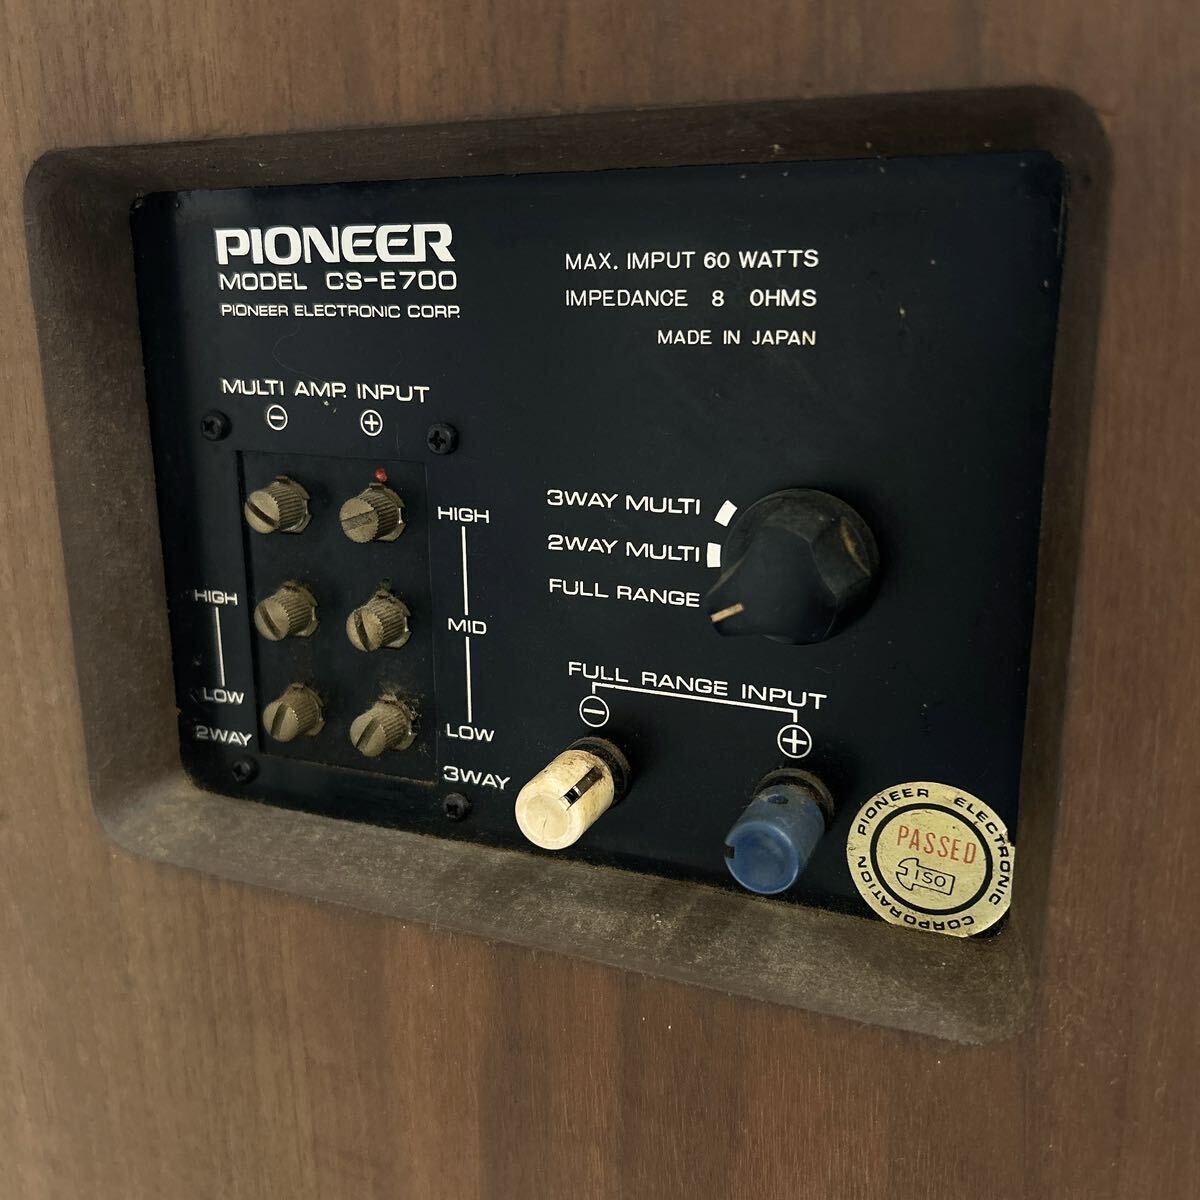  рабочий товар Pioneer Pioneer CS-E700 3way динамик пара аудио звук оборудование alp скала 0509